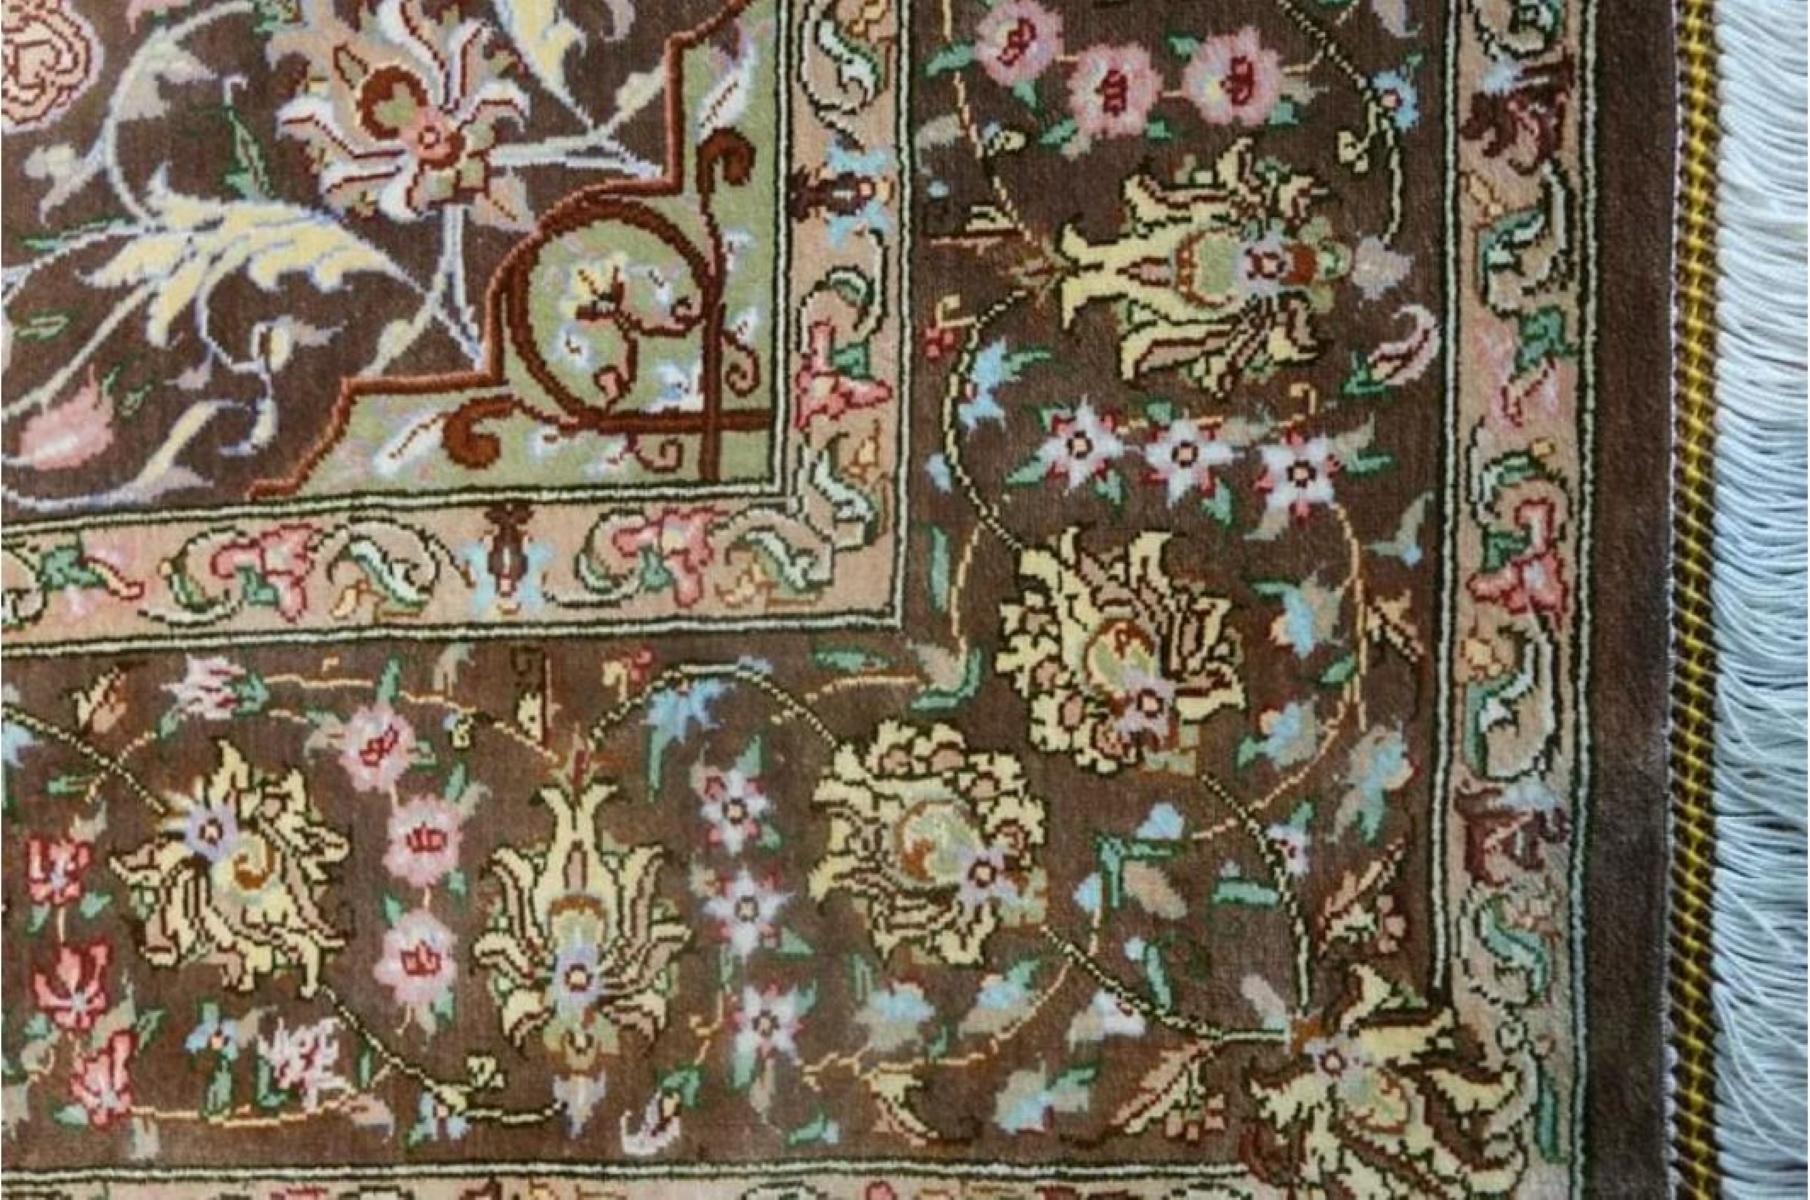 Très beau tapis persan Qum 700 noeuds par pouce, taille 5 x 3.5 Iran Qum Ahmadi Silk and Silk foundation. Environ 1 700 000 nœuds sont noués à la main, un par un. Il faut un an pour réaliser cette œuvre d'art.